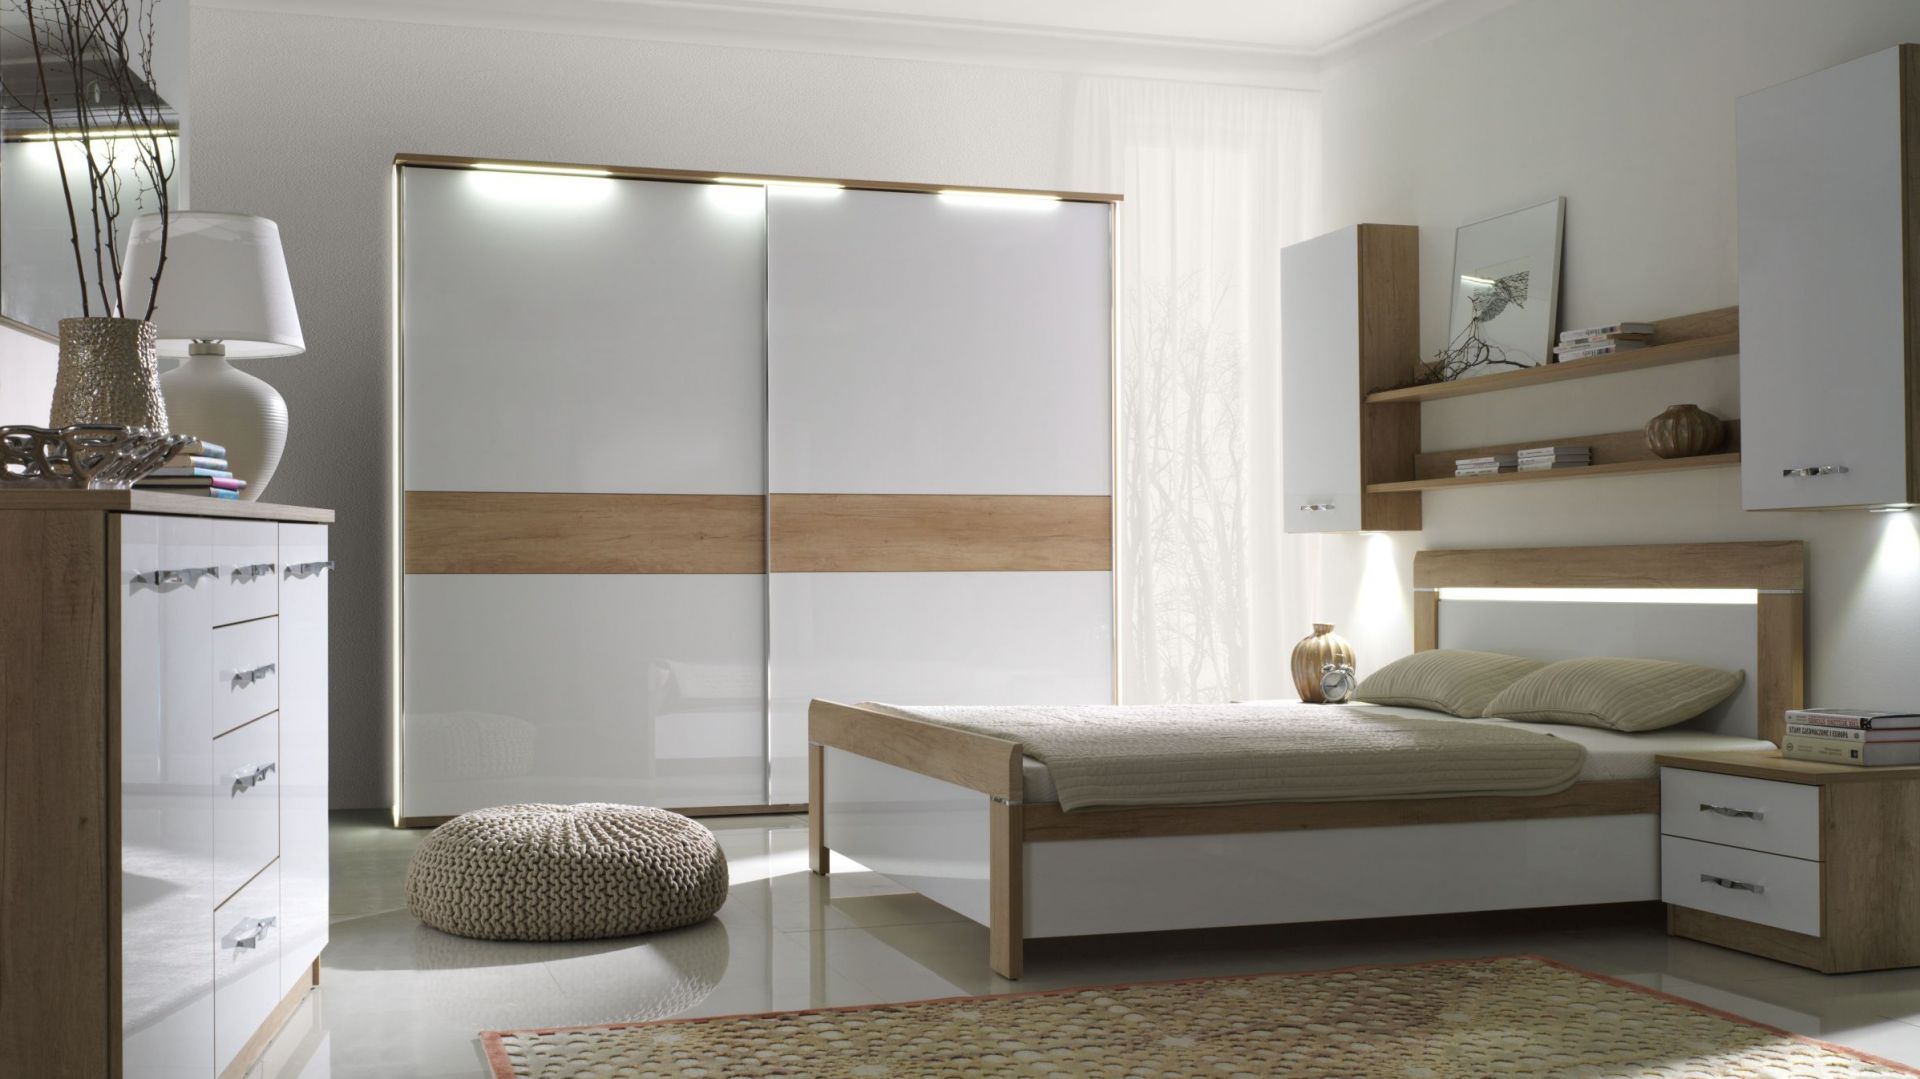 Sypialnia pełna światła - 15 propozycji łóżek w jasnych barwach 